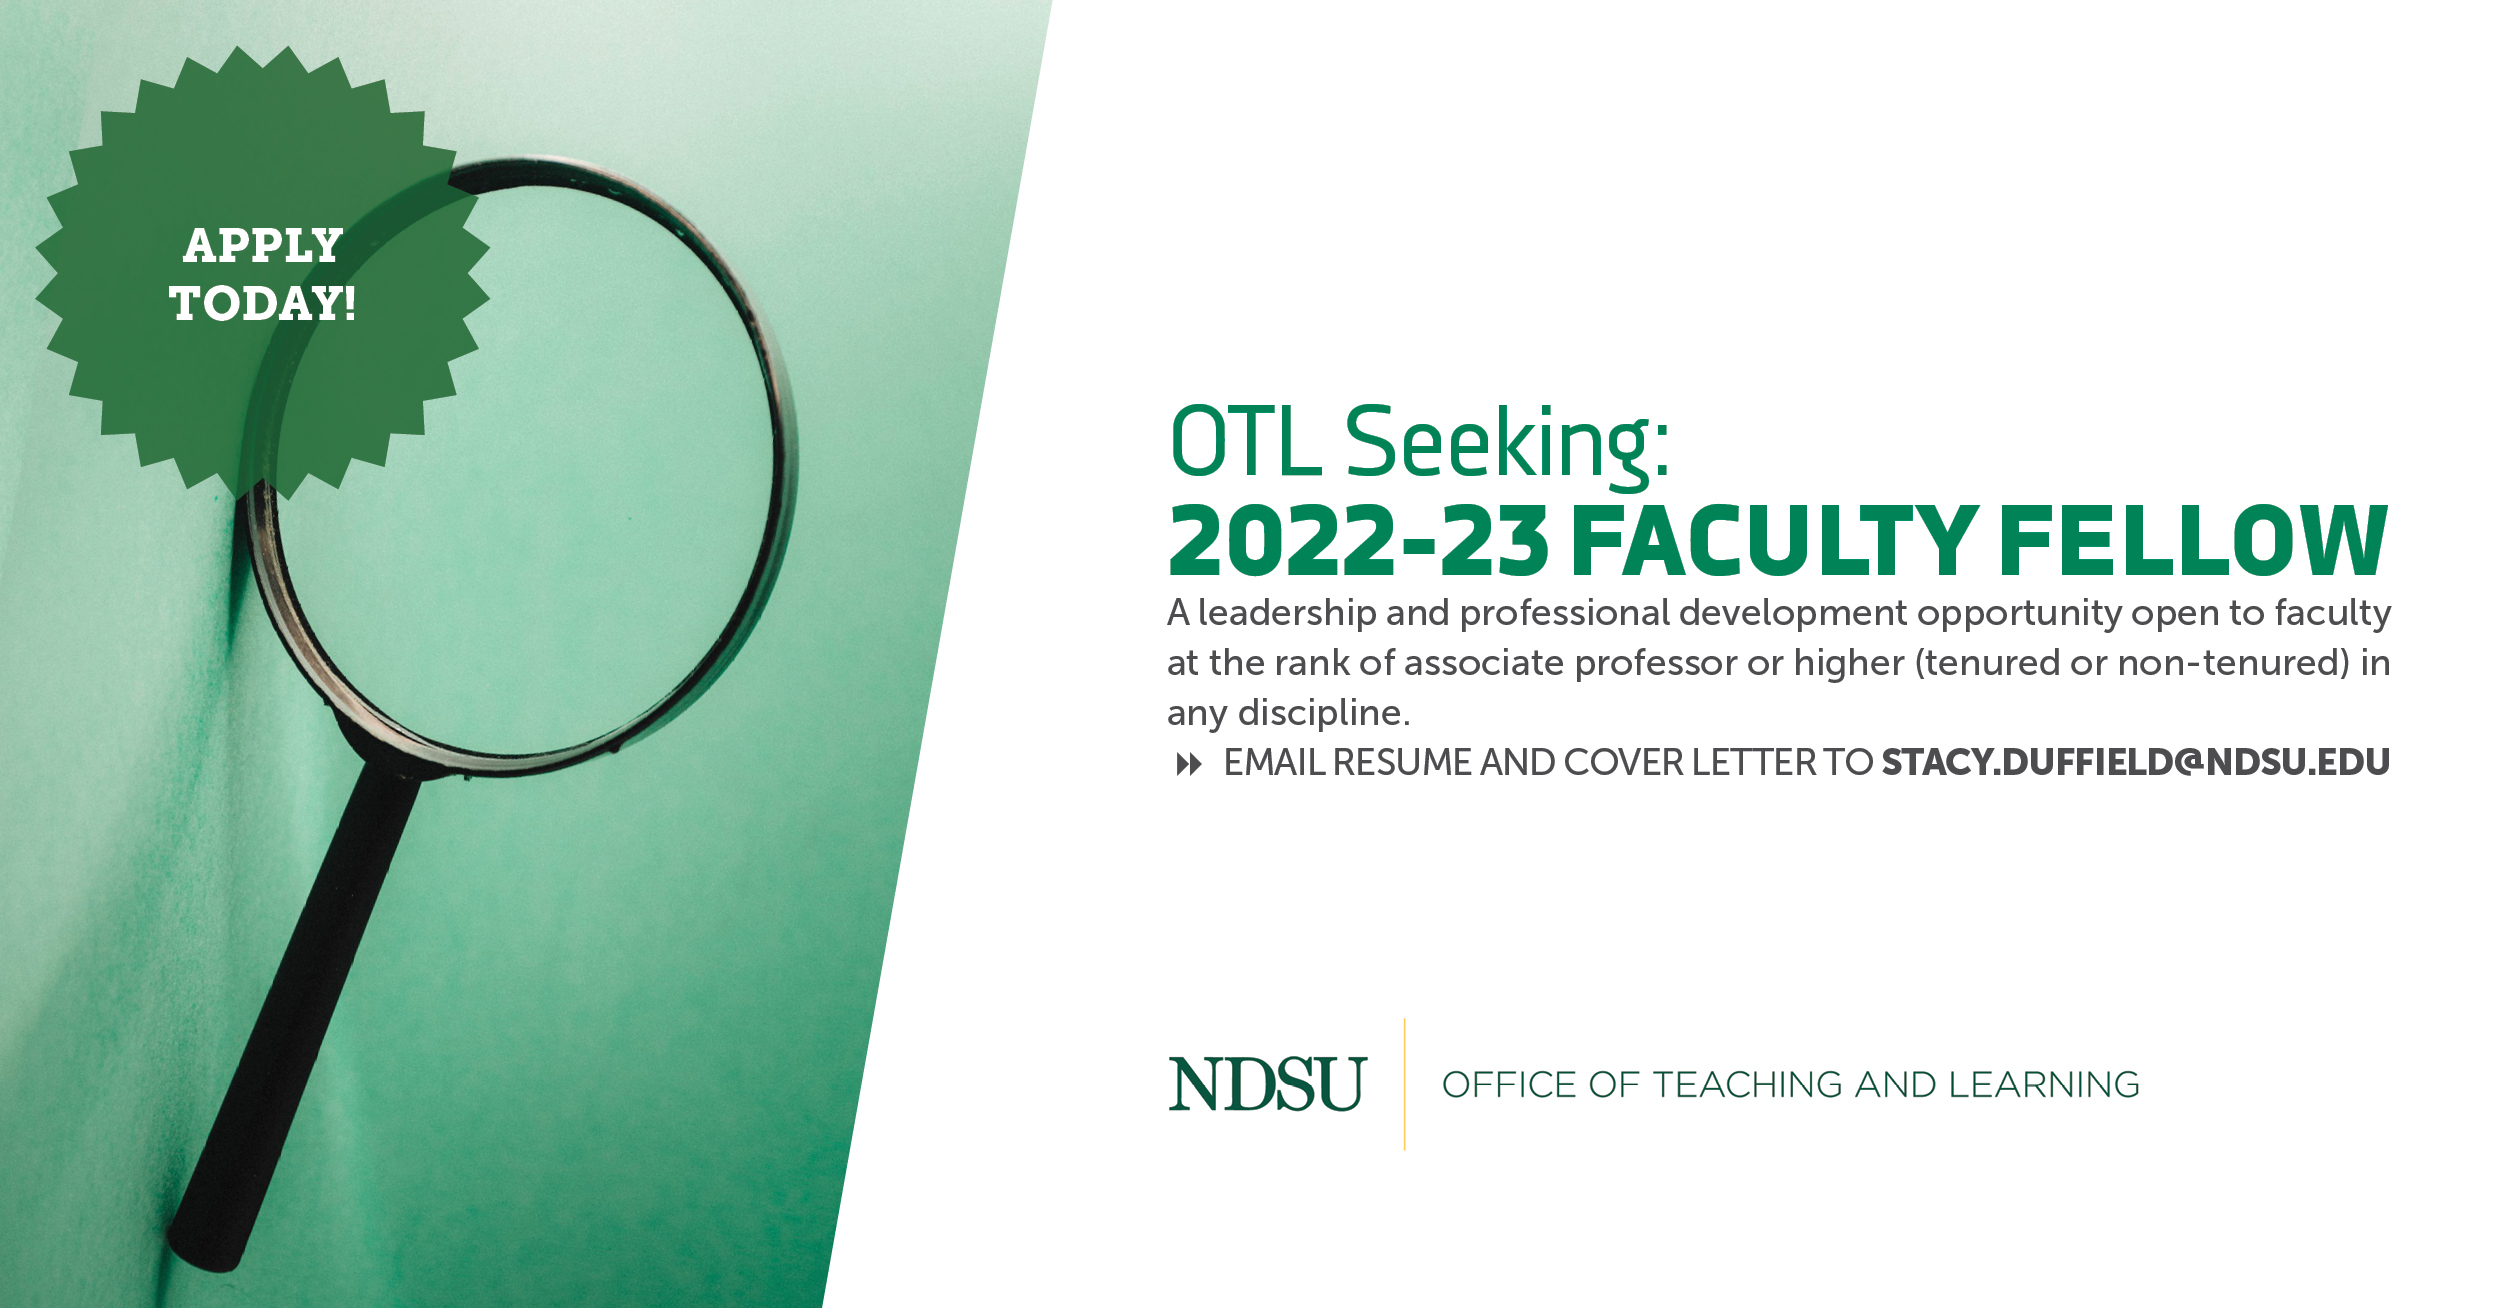 OTL Seeking faculty fellow for 2022-2023